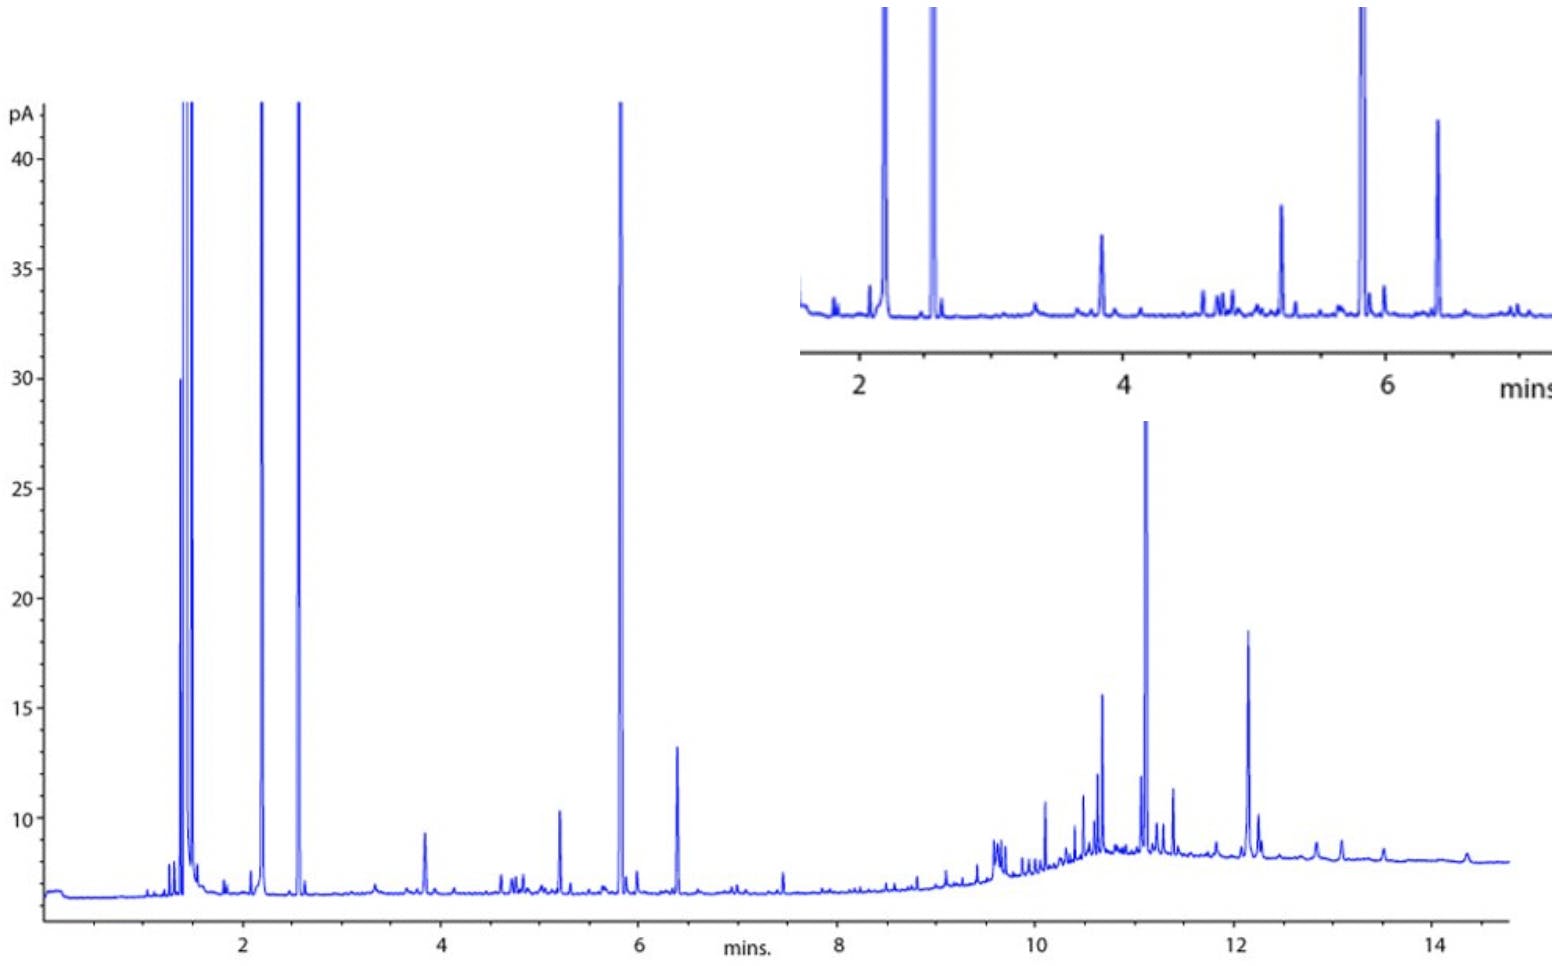 GC chromatogram showing baseline spikes